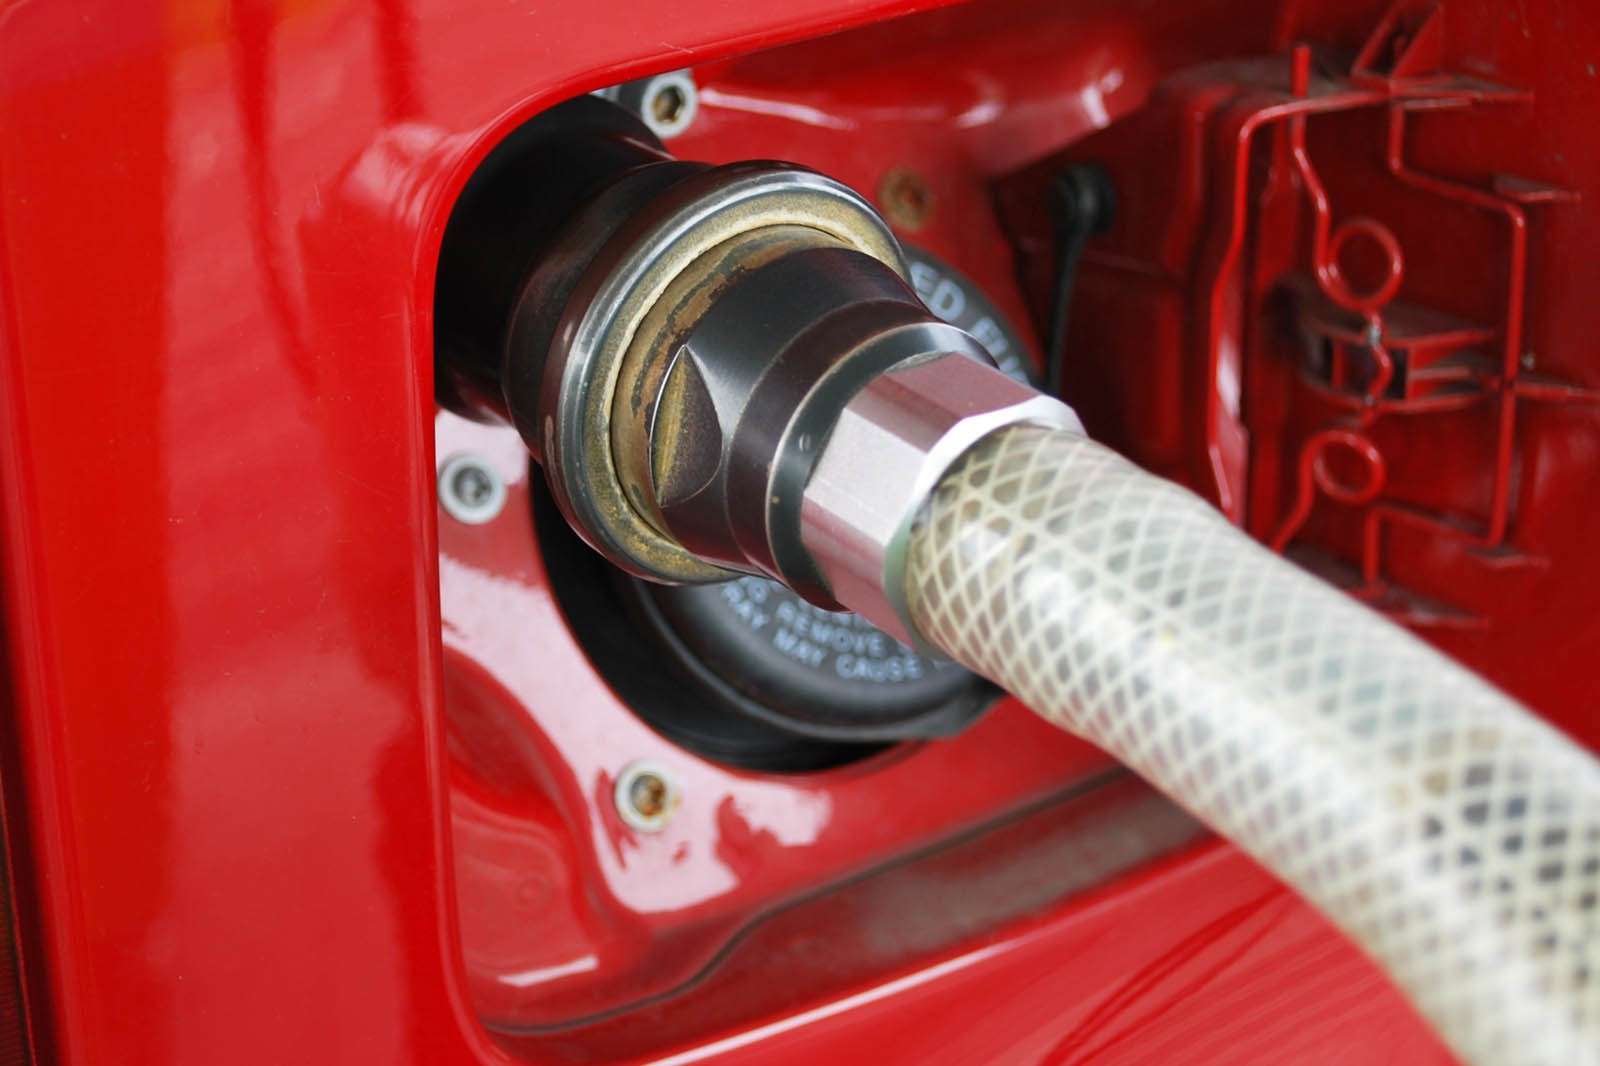 Заправка машины бытовым газом – не такое уж безумие: считаем бизнес-план - – автомобильный журнал